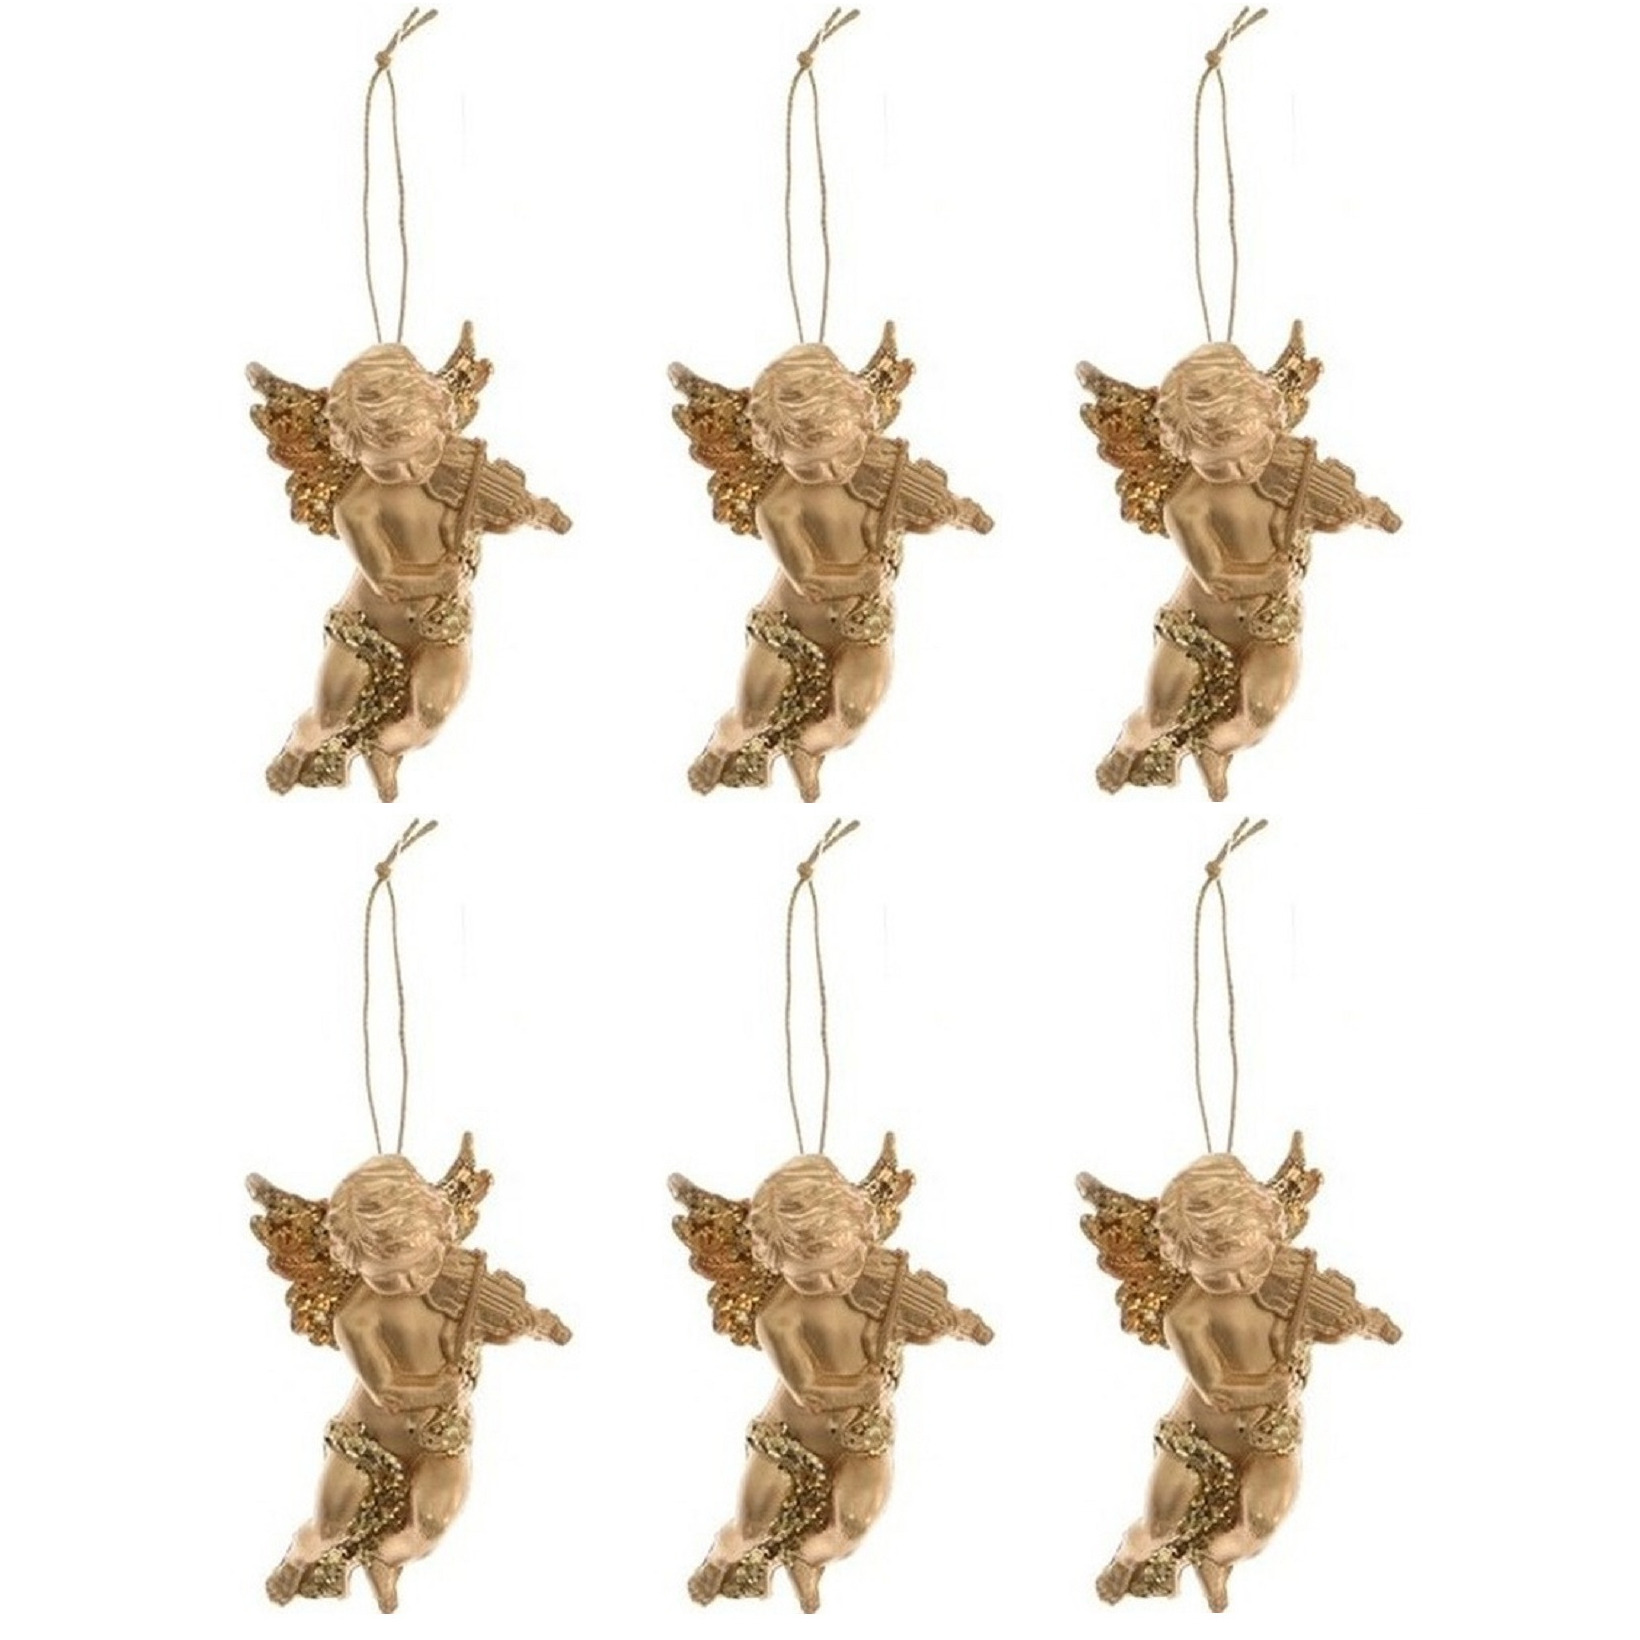 6x Kerstboomhanger-Kersthanger gouden engelen met viool 10 cm